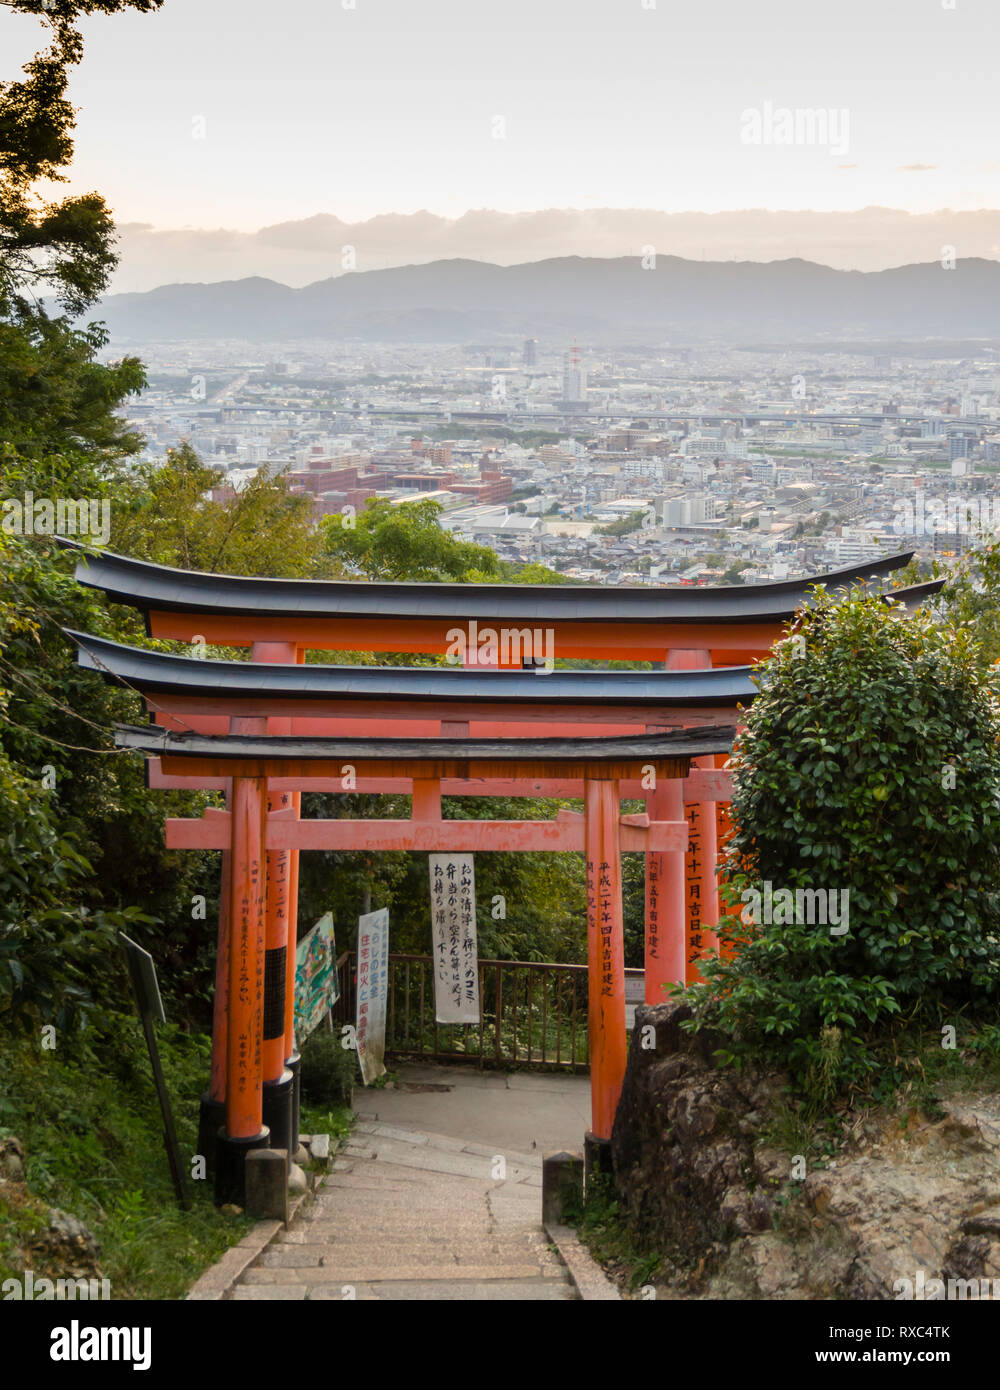 Vue panoramique de Kyoto, Japon, derrière des portes Torii torii Senbon, une ligne d'environ 1 000 portes menant Fushimi Inari Taisha. Banque D'Images